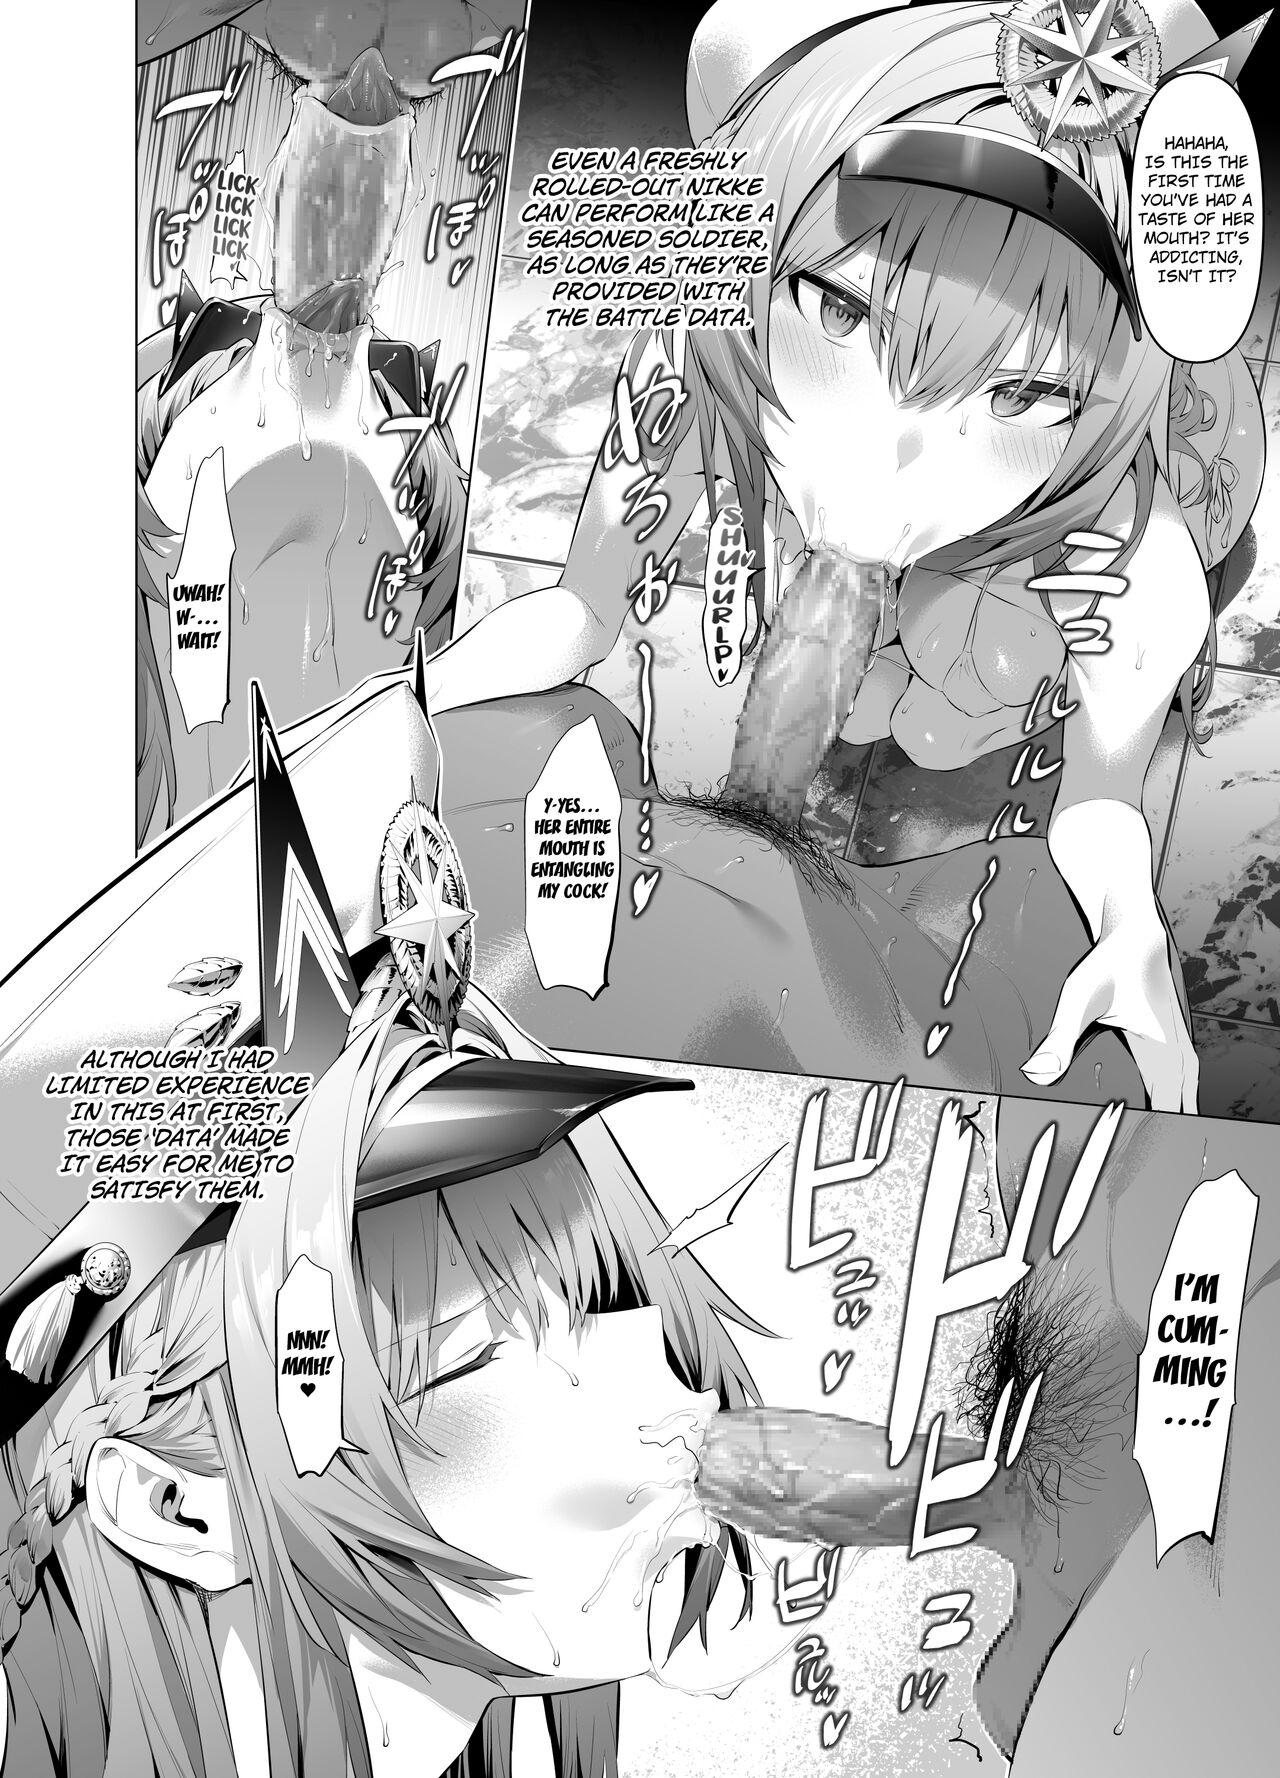 hlm Mini Manga 2